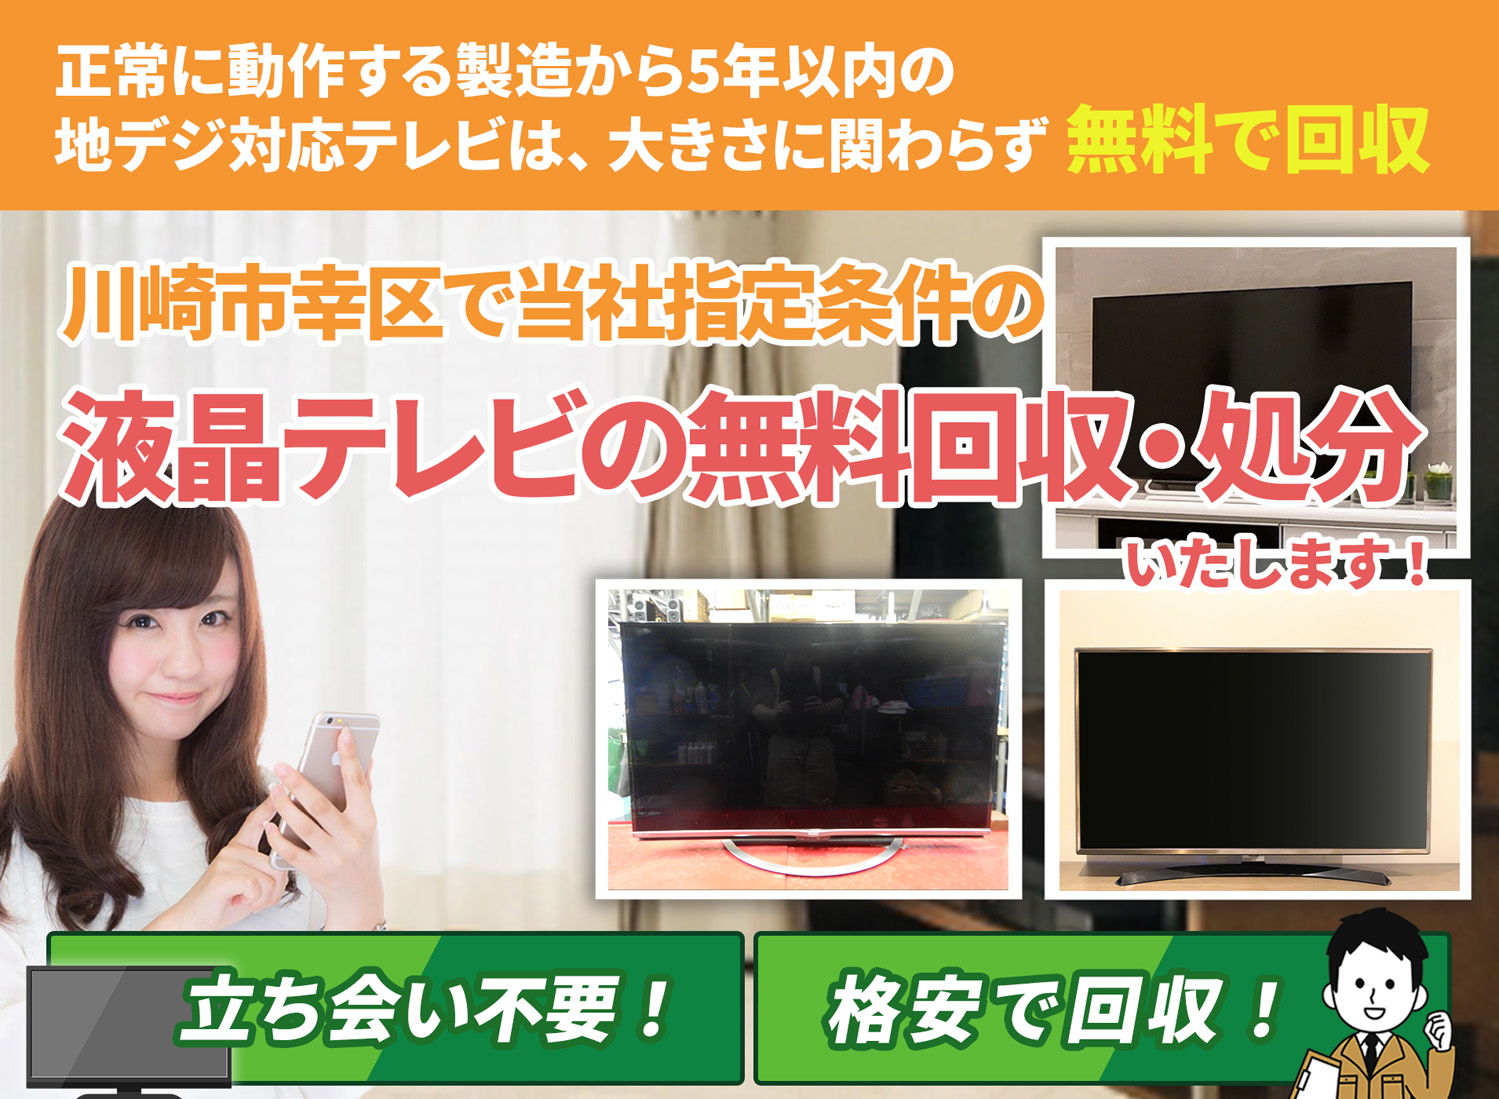 川崎市幸区のサービスで地域一番を目指す液晶テレビ無料回収処分隊の液晶テレビ無料回収サービス